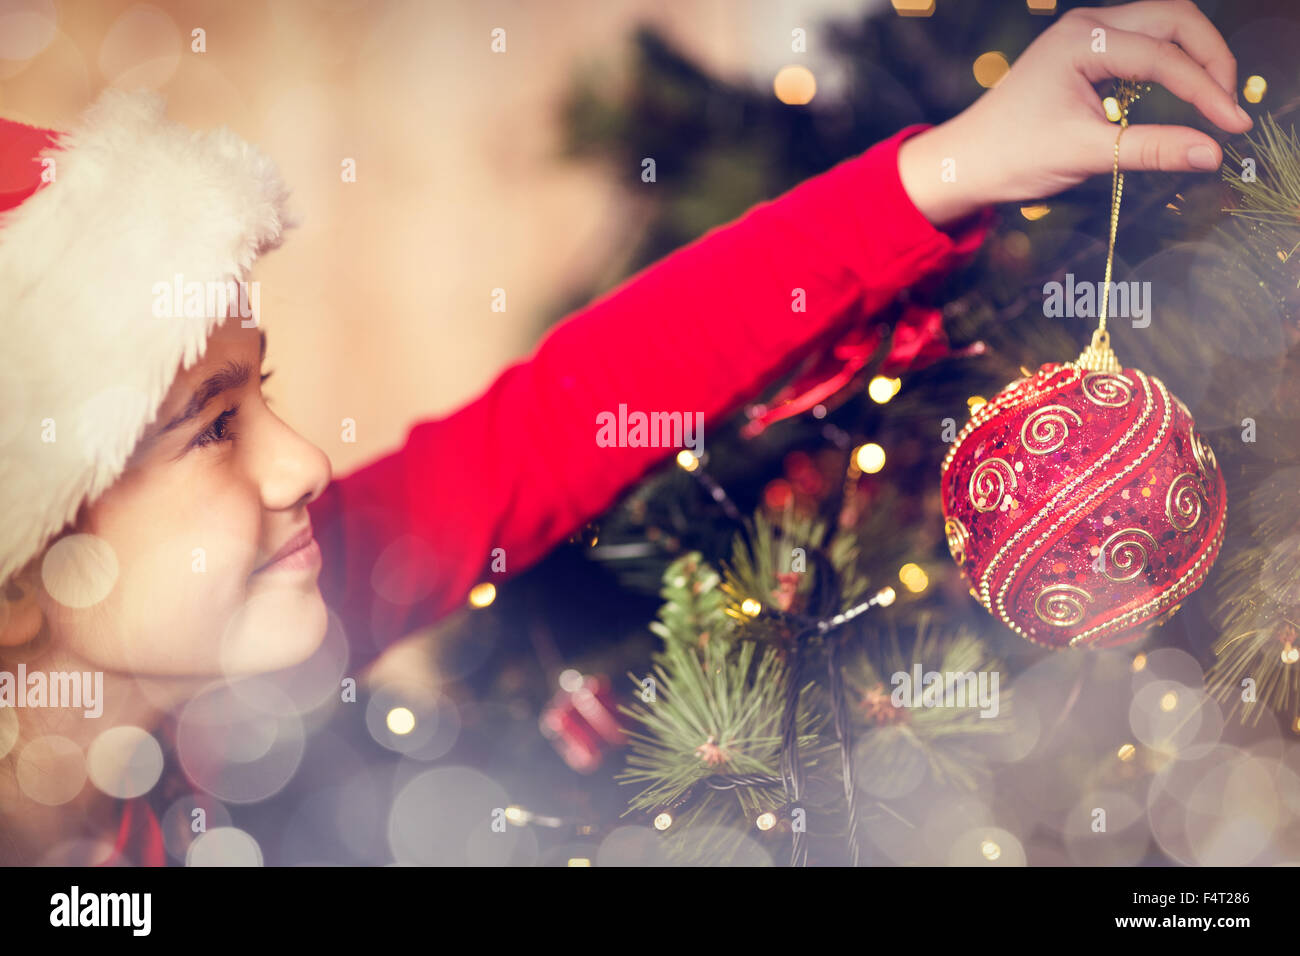 Immagine composita di festosa bambina appesa una decorazione natalizia Foto Stock